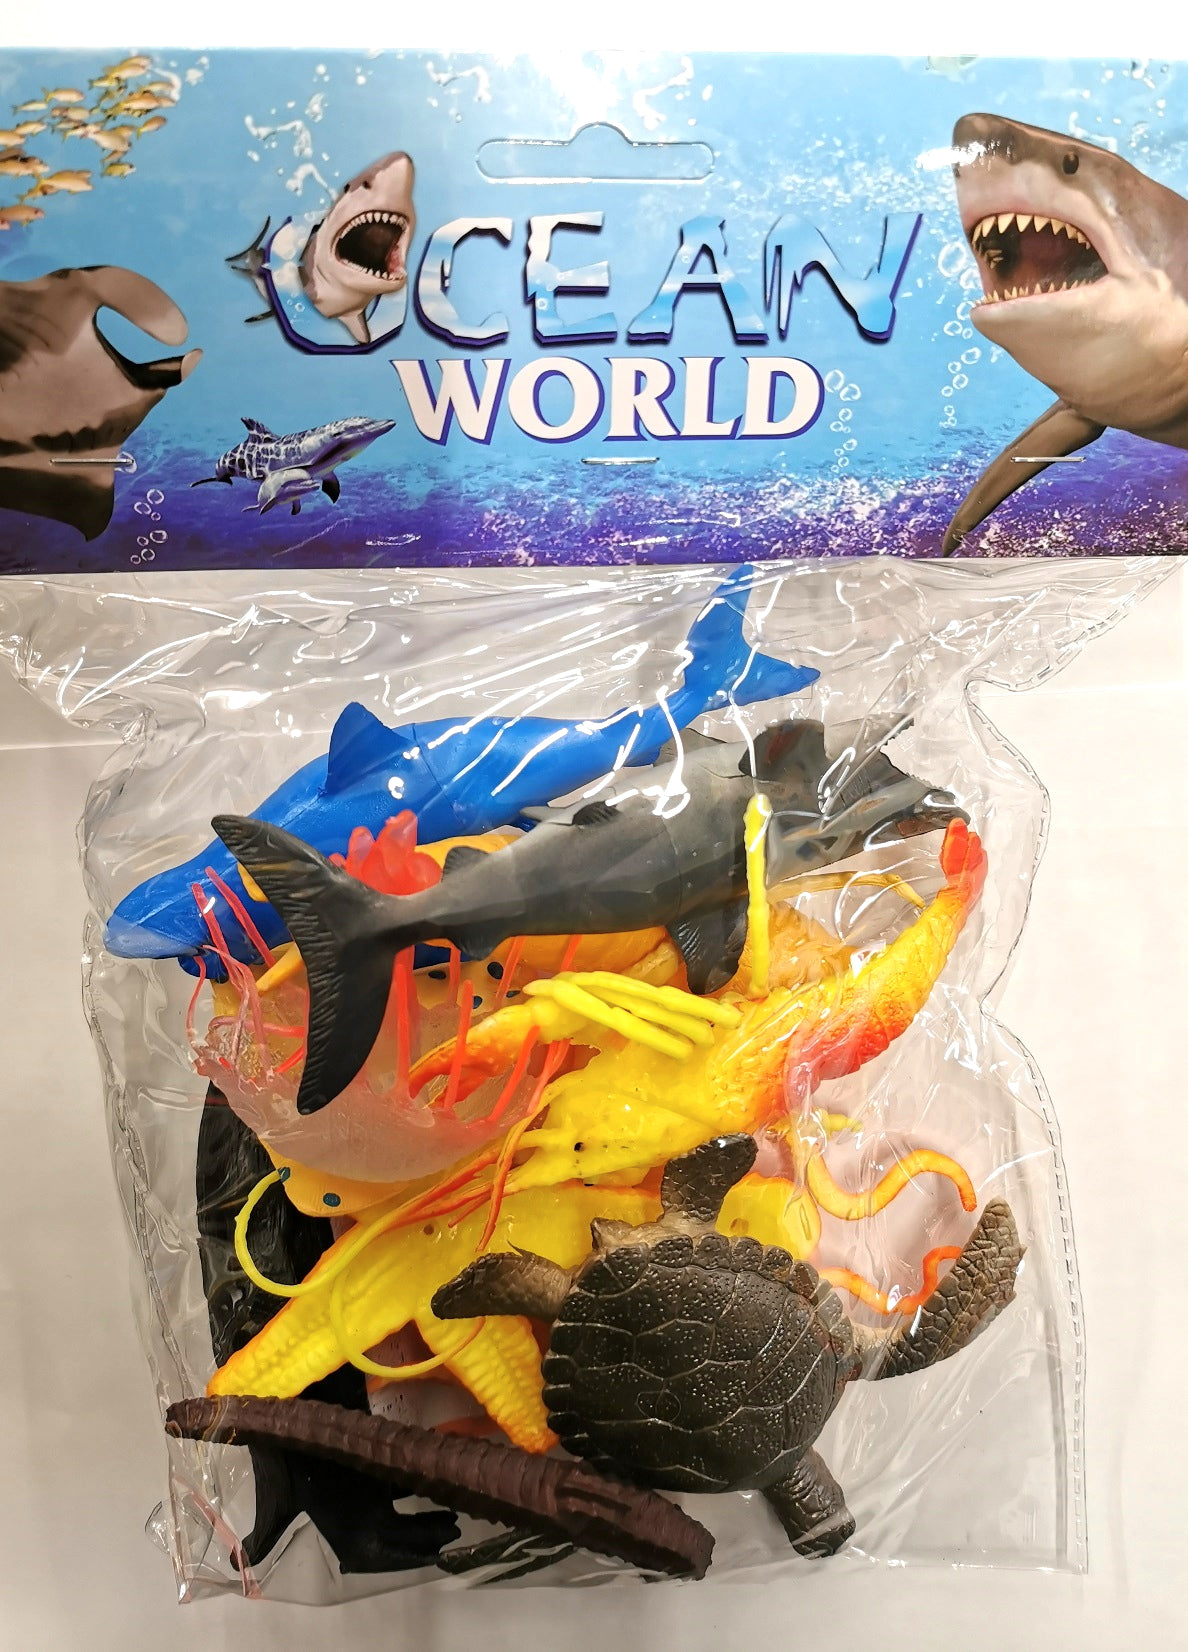 Animaux marins (paquet de 12) - Jouets de créatures marines en plastique assortis